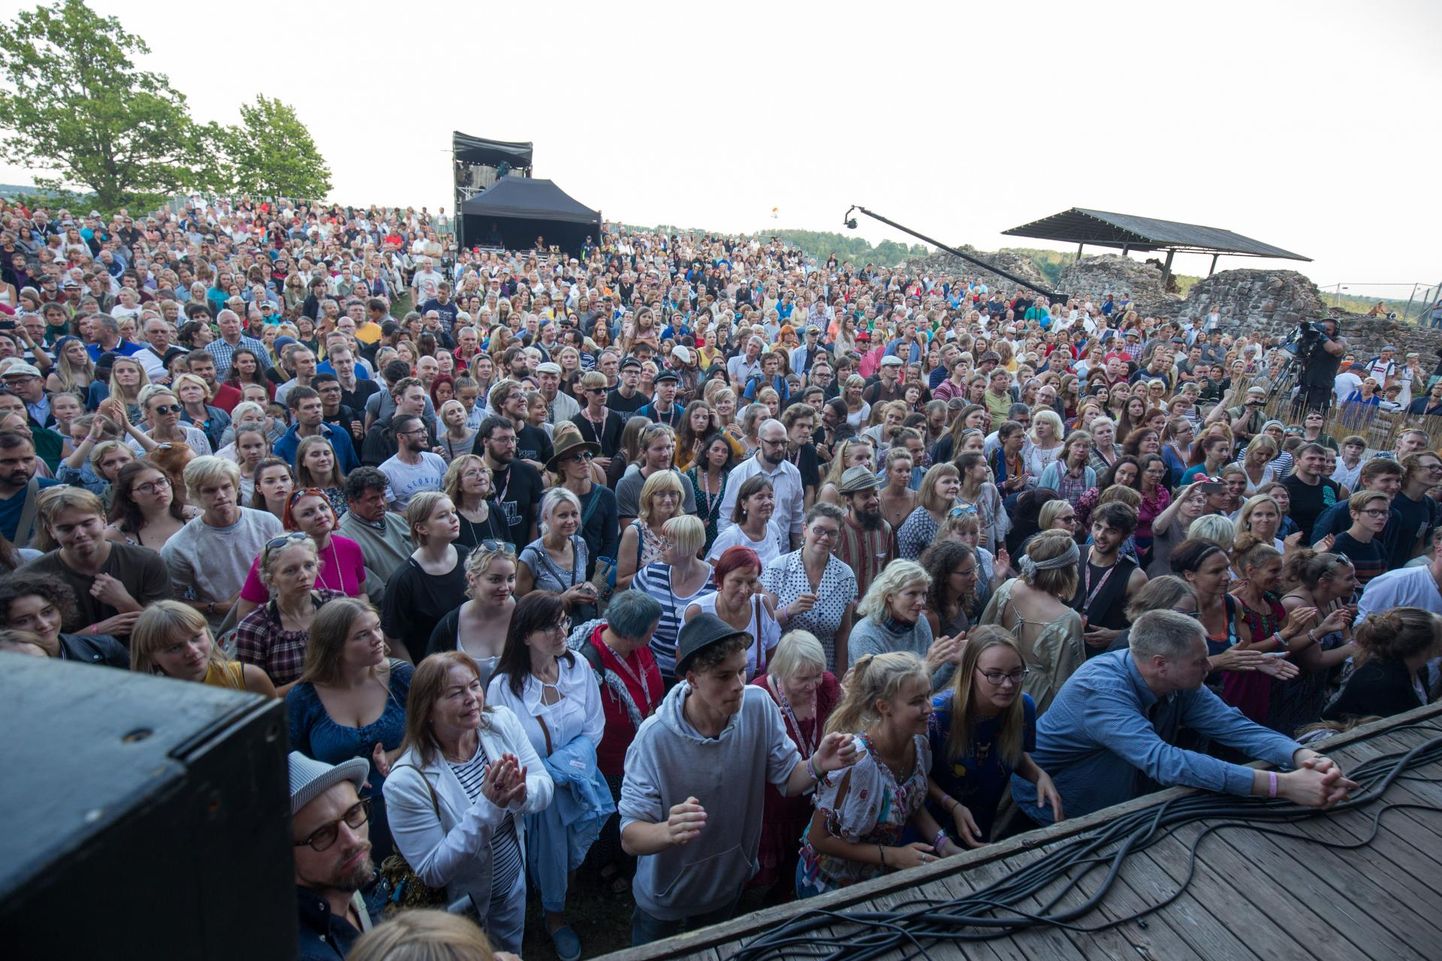 Eesti suurim festival, mille nimetuses on sõna "pärimusmuusika", peetakse iga aasta juuli lõpus Viljandis.